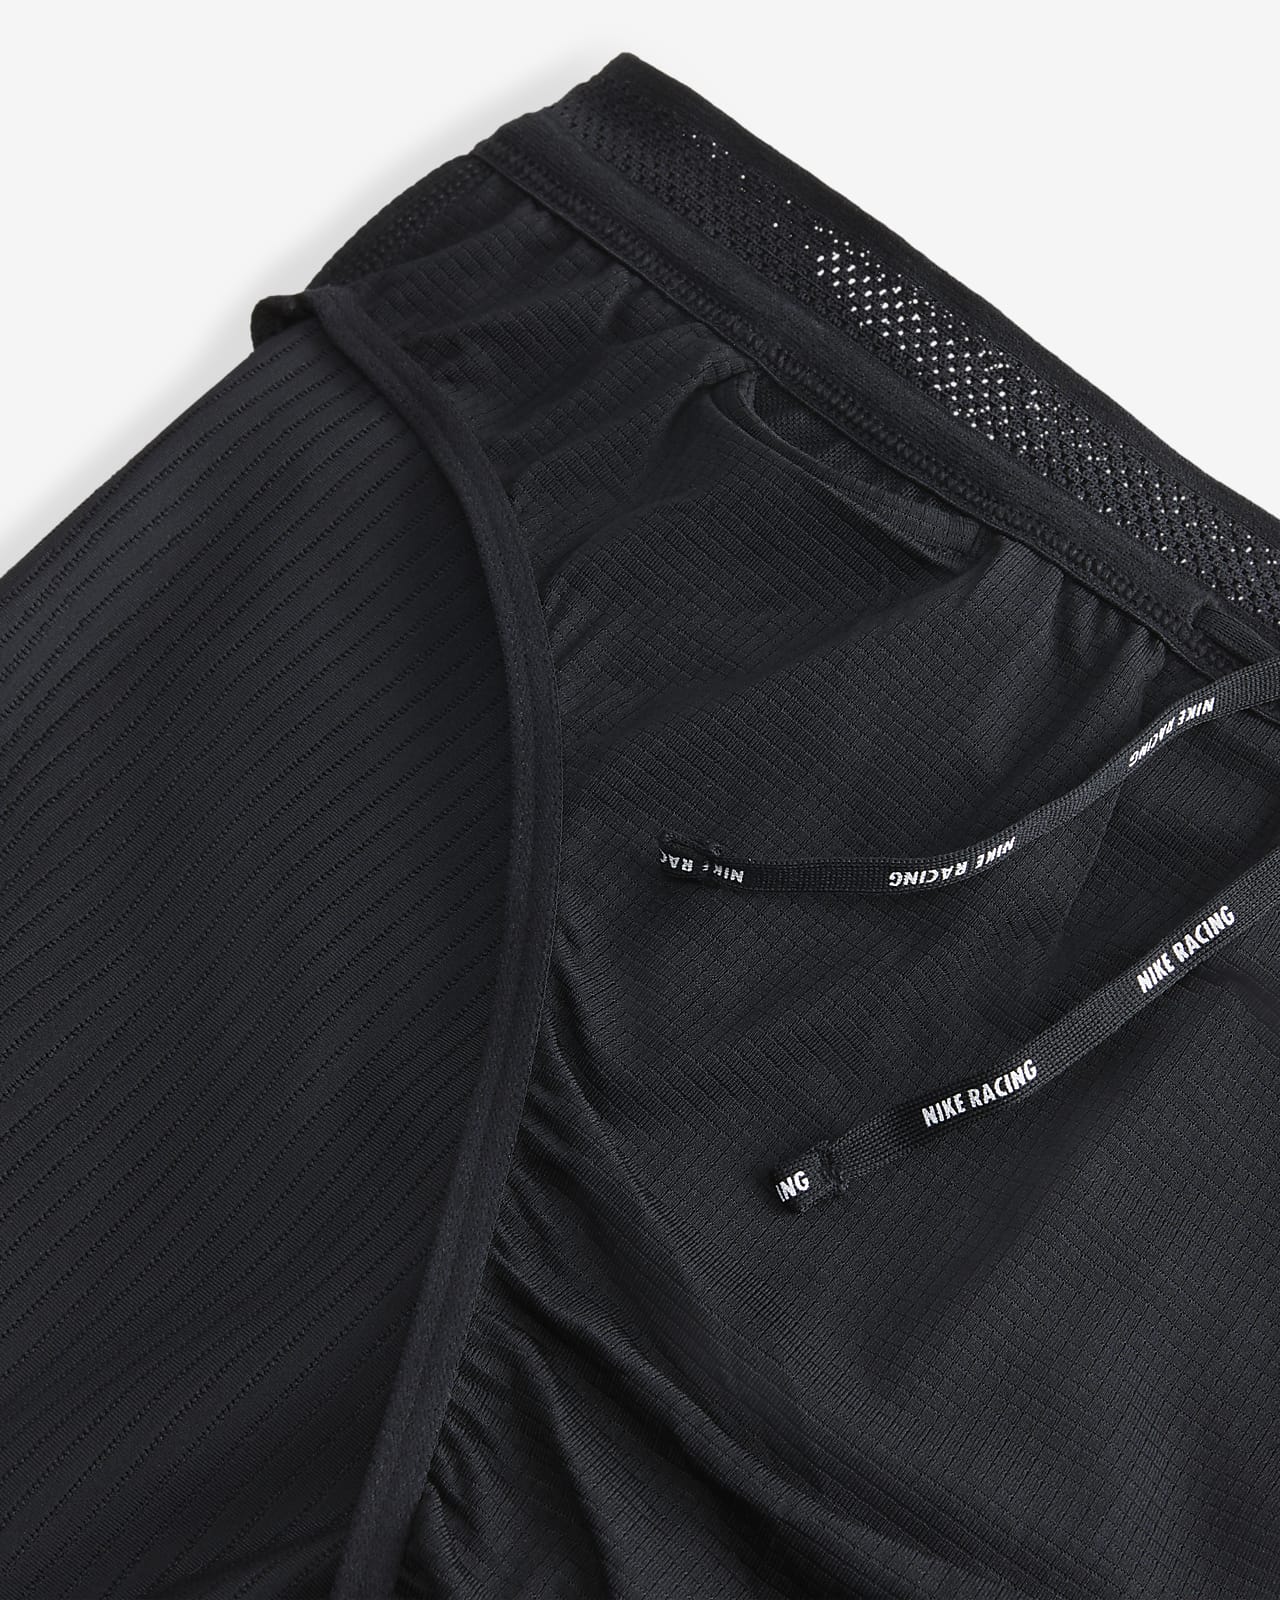 Buy Nike Men's AeroSwift 1/2-Length Running Tights Black/White S